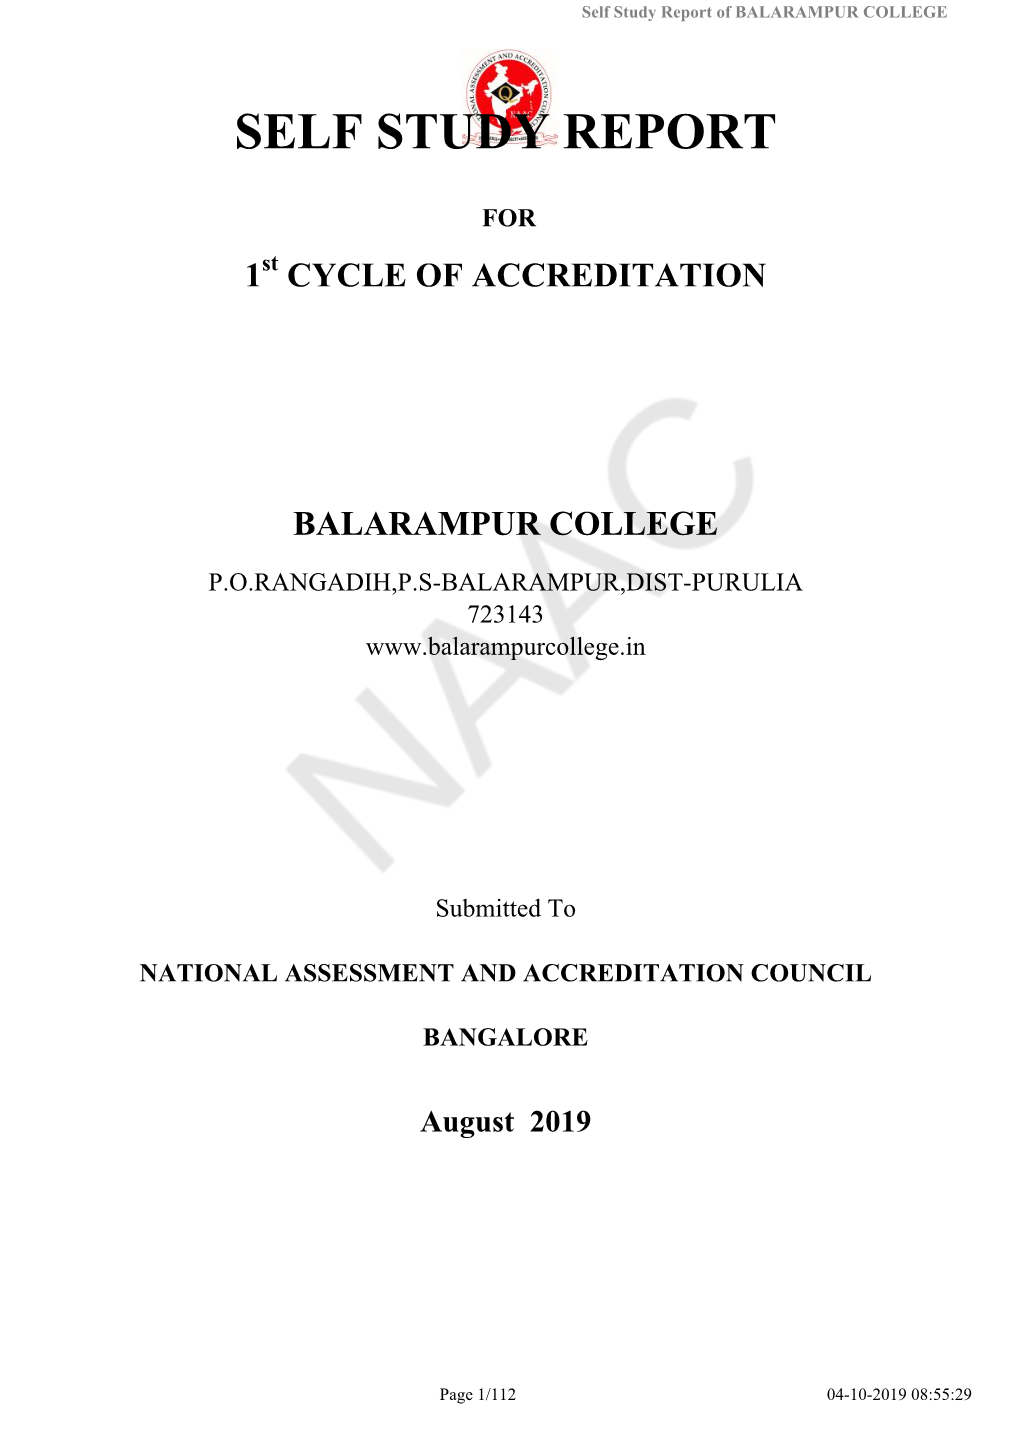 Self Study Report of BALARAMPUR COLLEGE